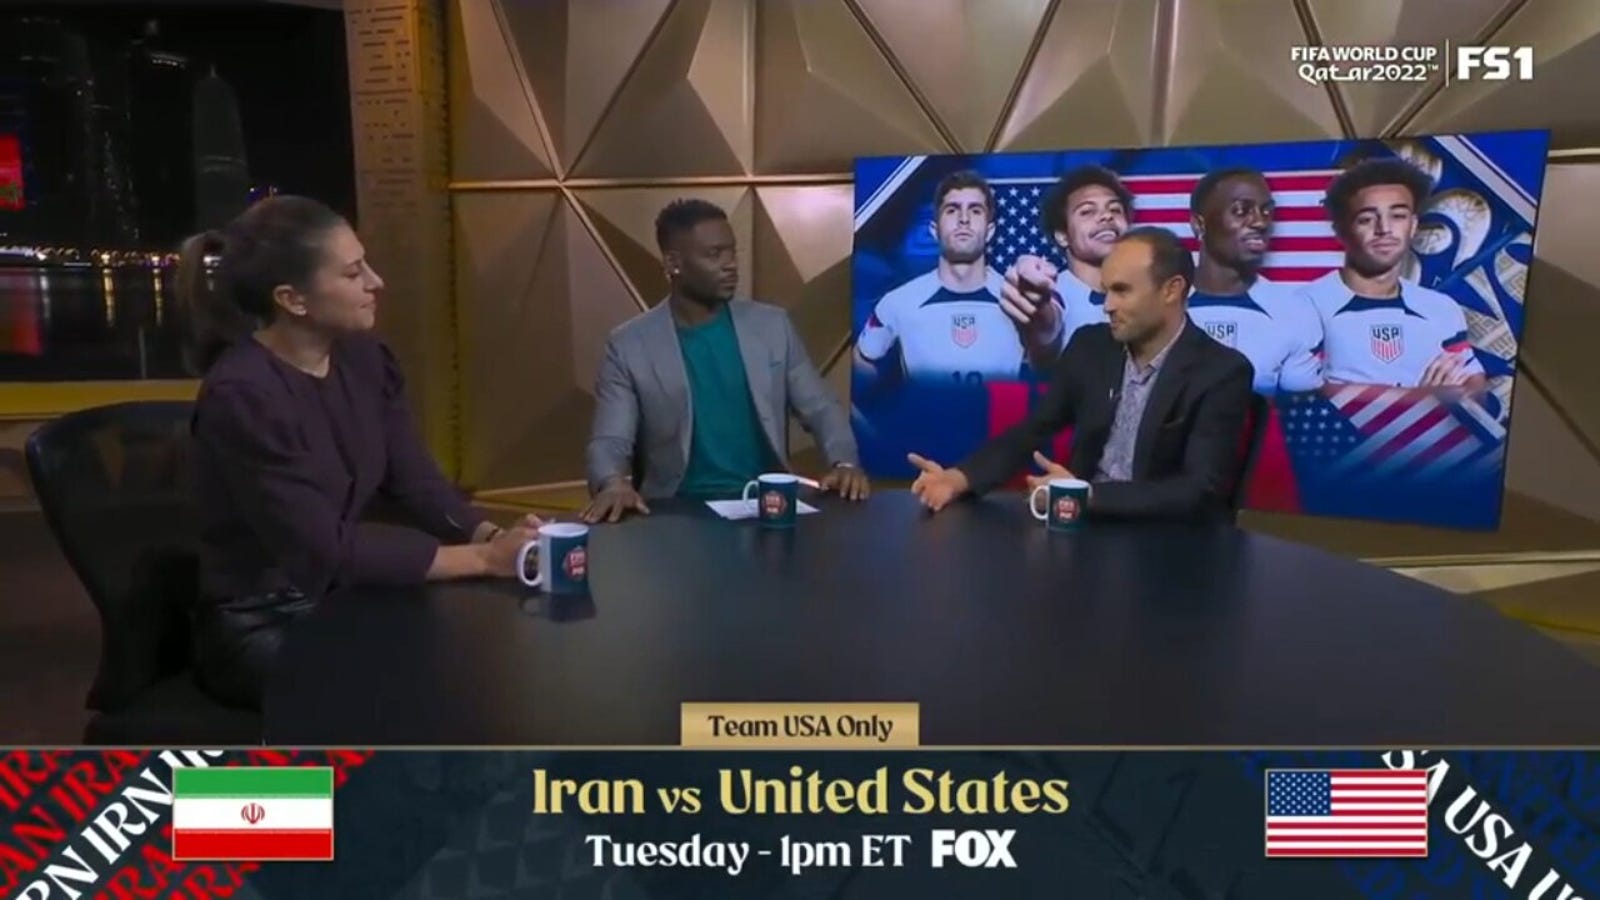 Anteprima Iran vs USA: l'USMNT verrà eliminato nella fase a gironi? 